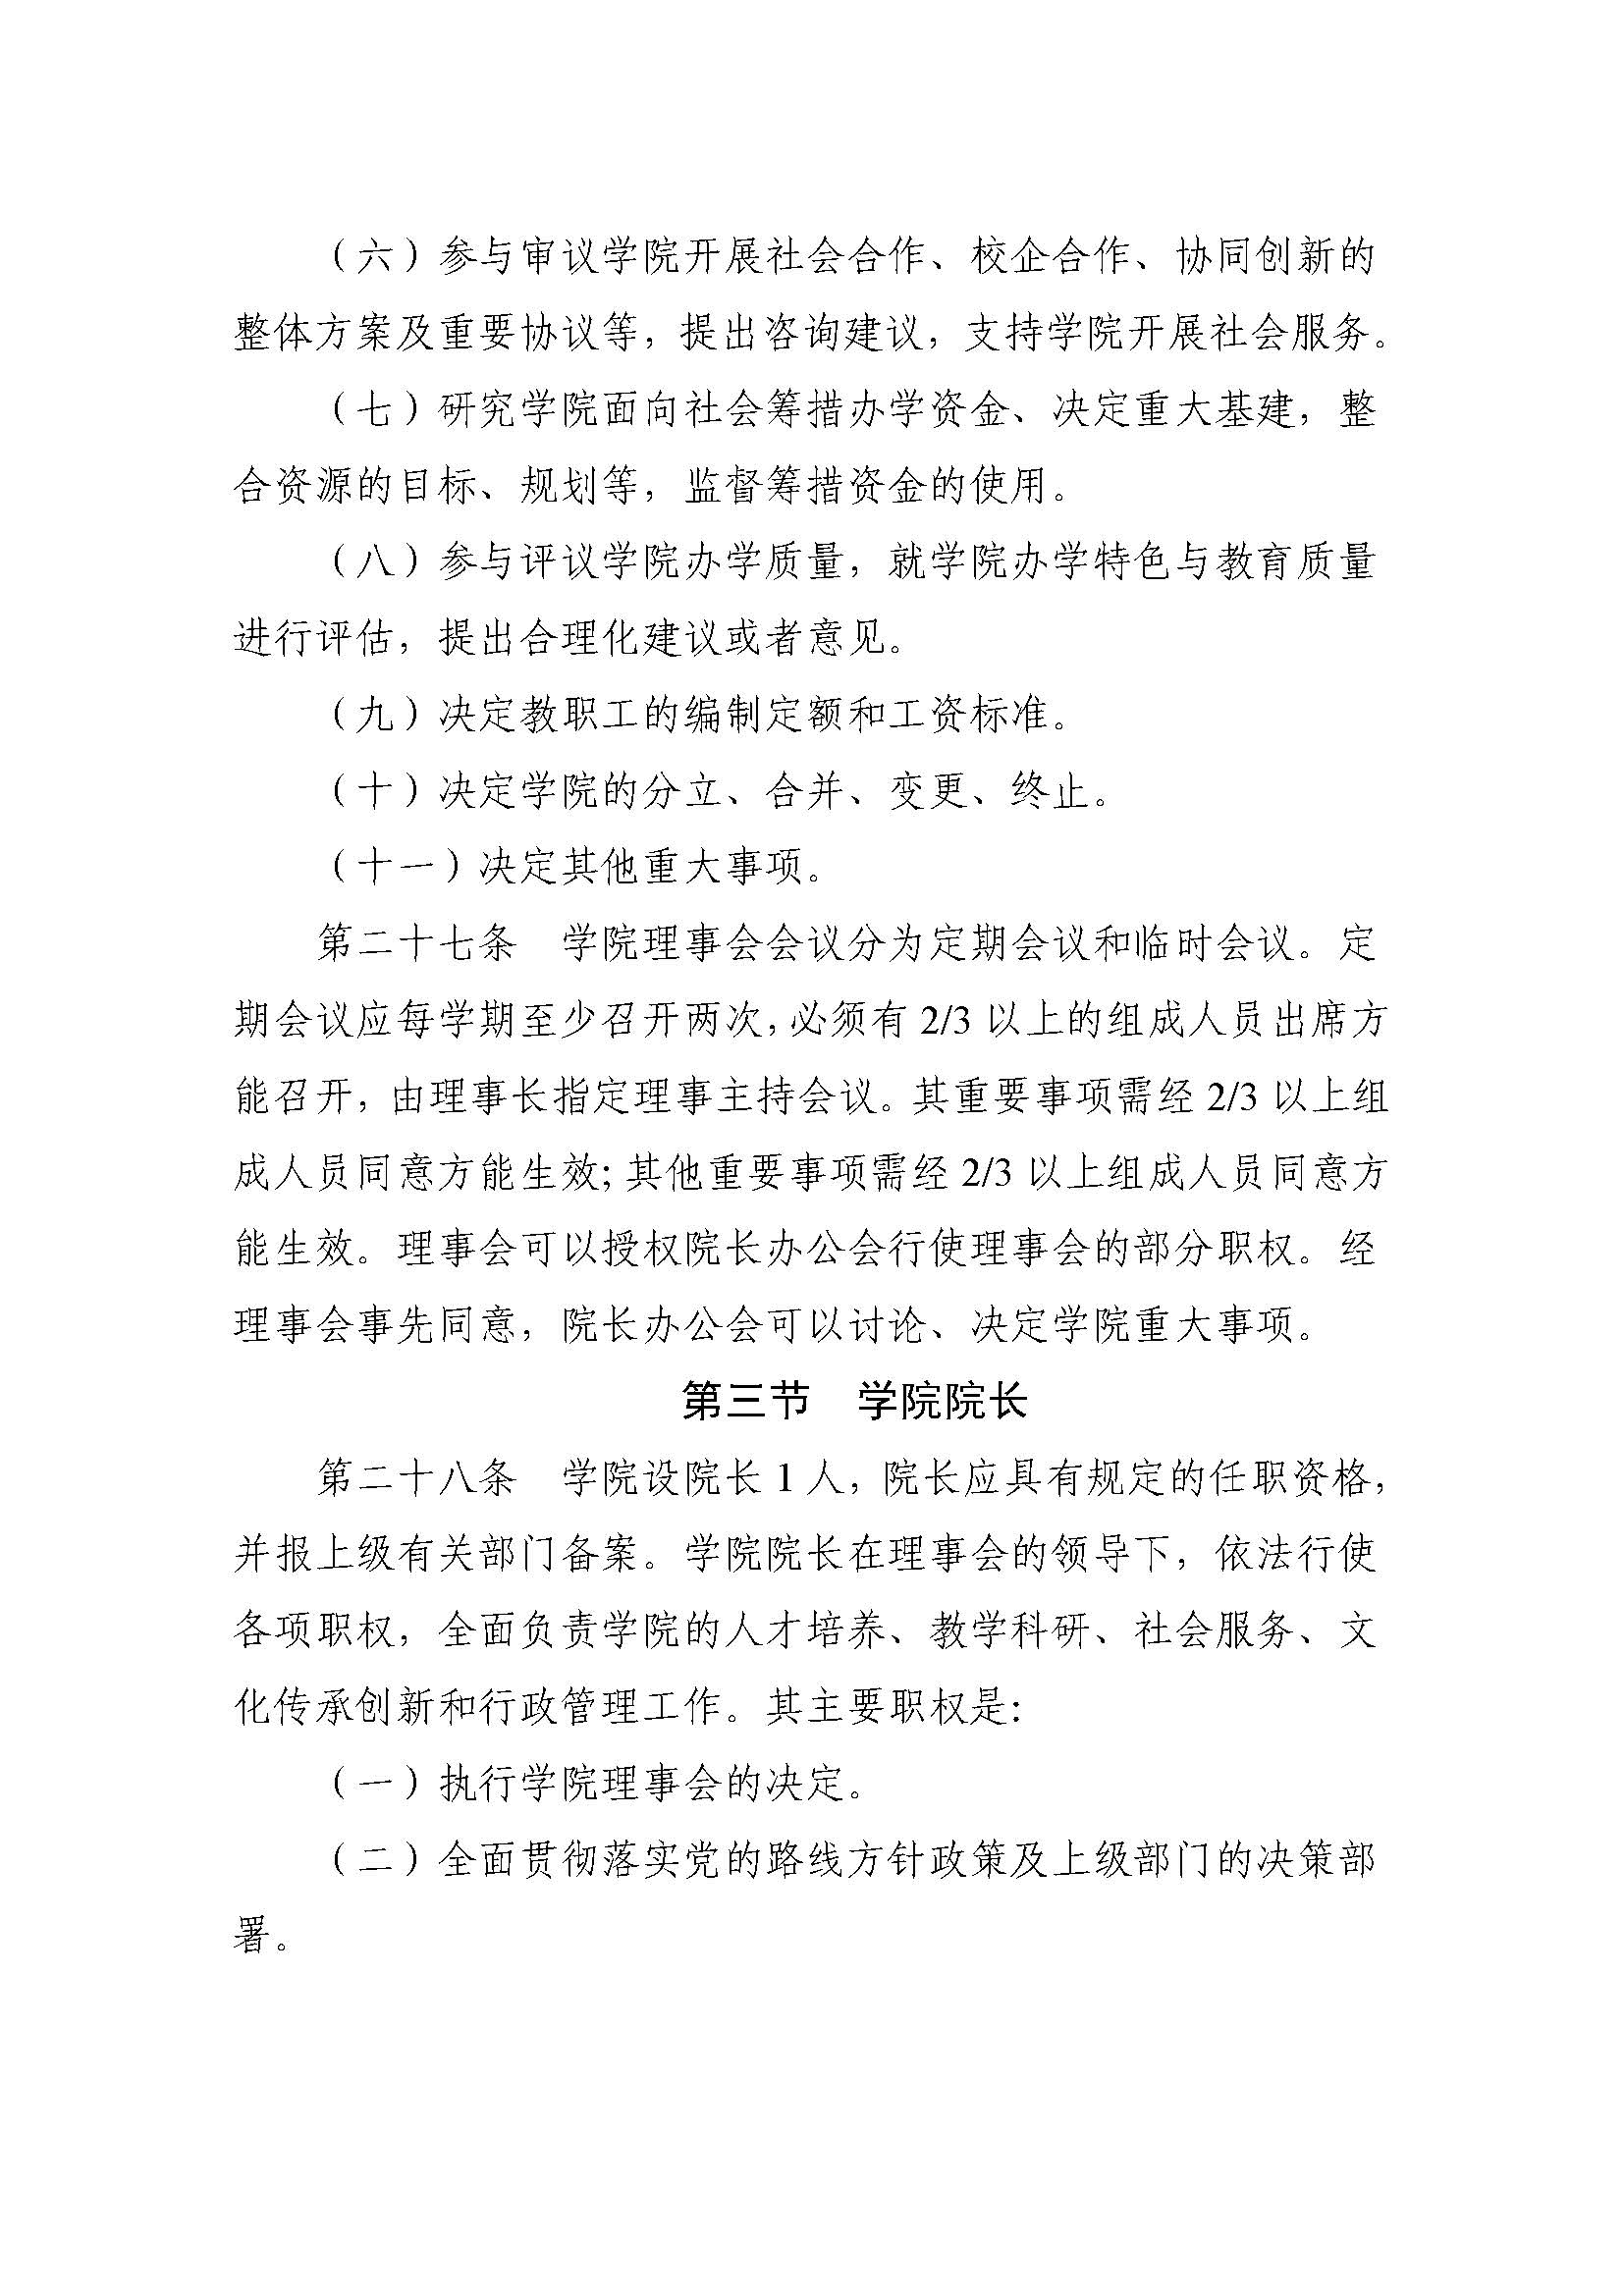 郑州黄河护理职业学院章程_页面_09.jpg